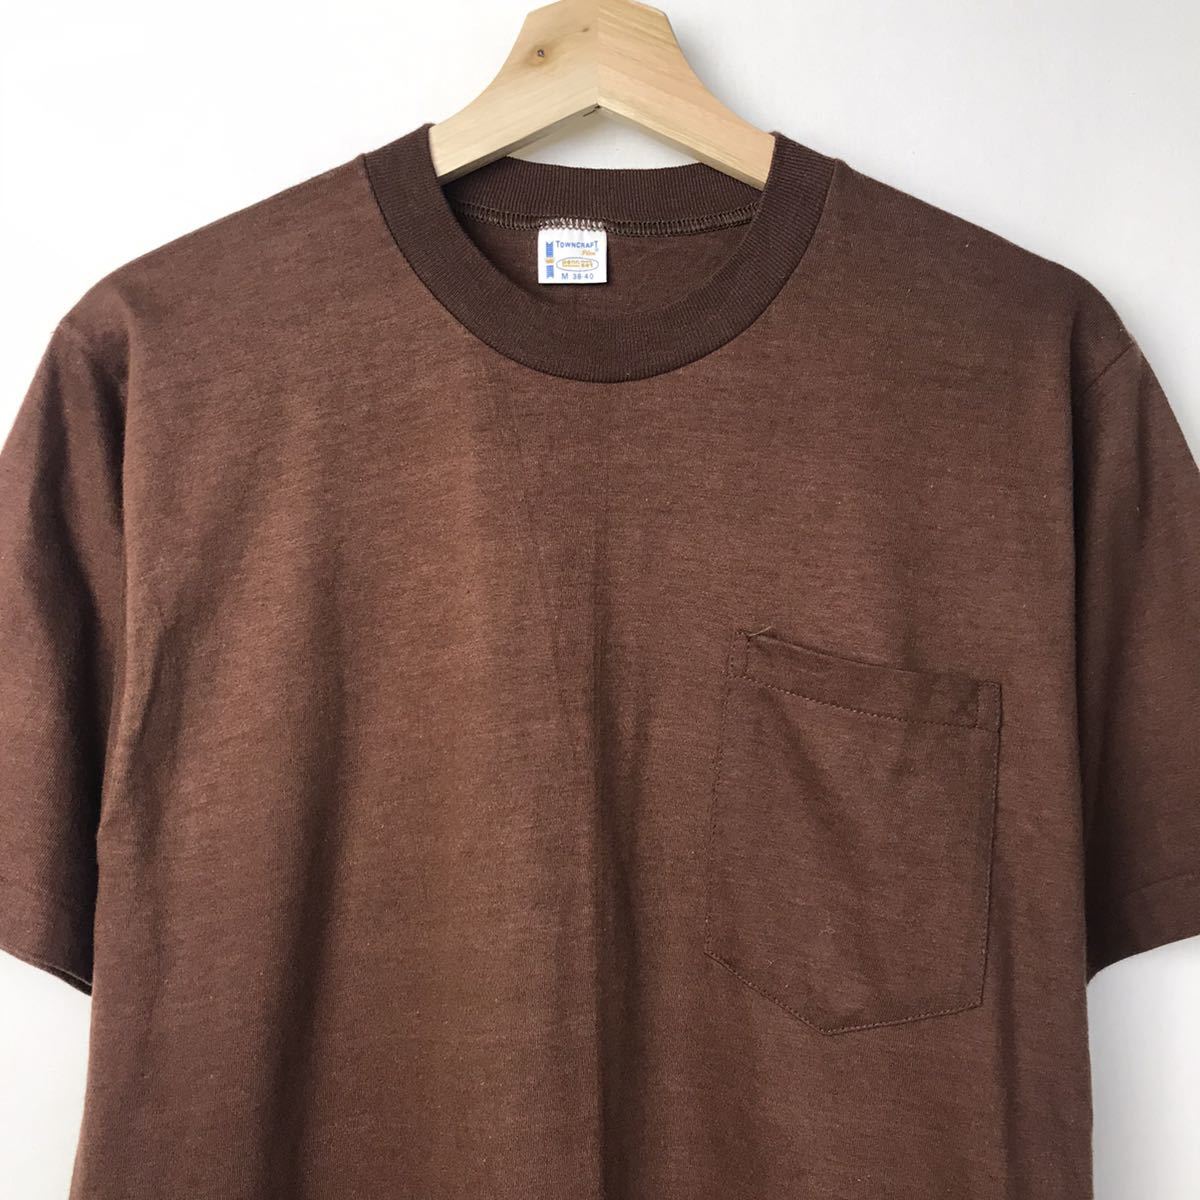 定番の中古商品 60s70s デッドストック M ブラウン Tシャツ ポケット付き タウンクラフト TOWNCRAFT ビンテージ 無地